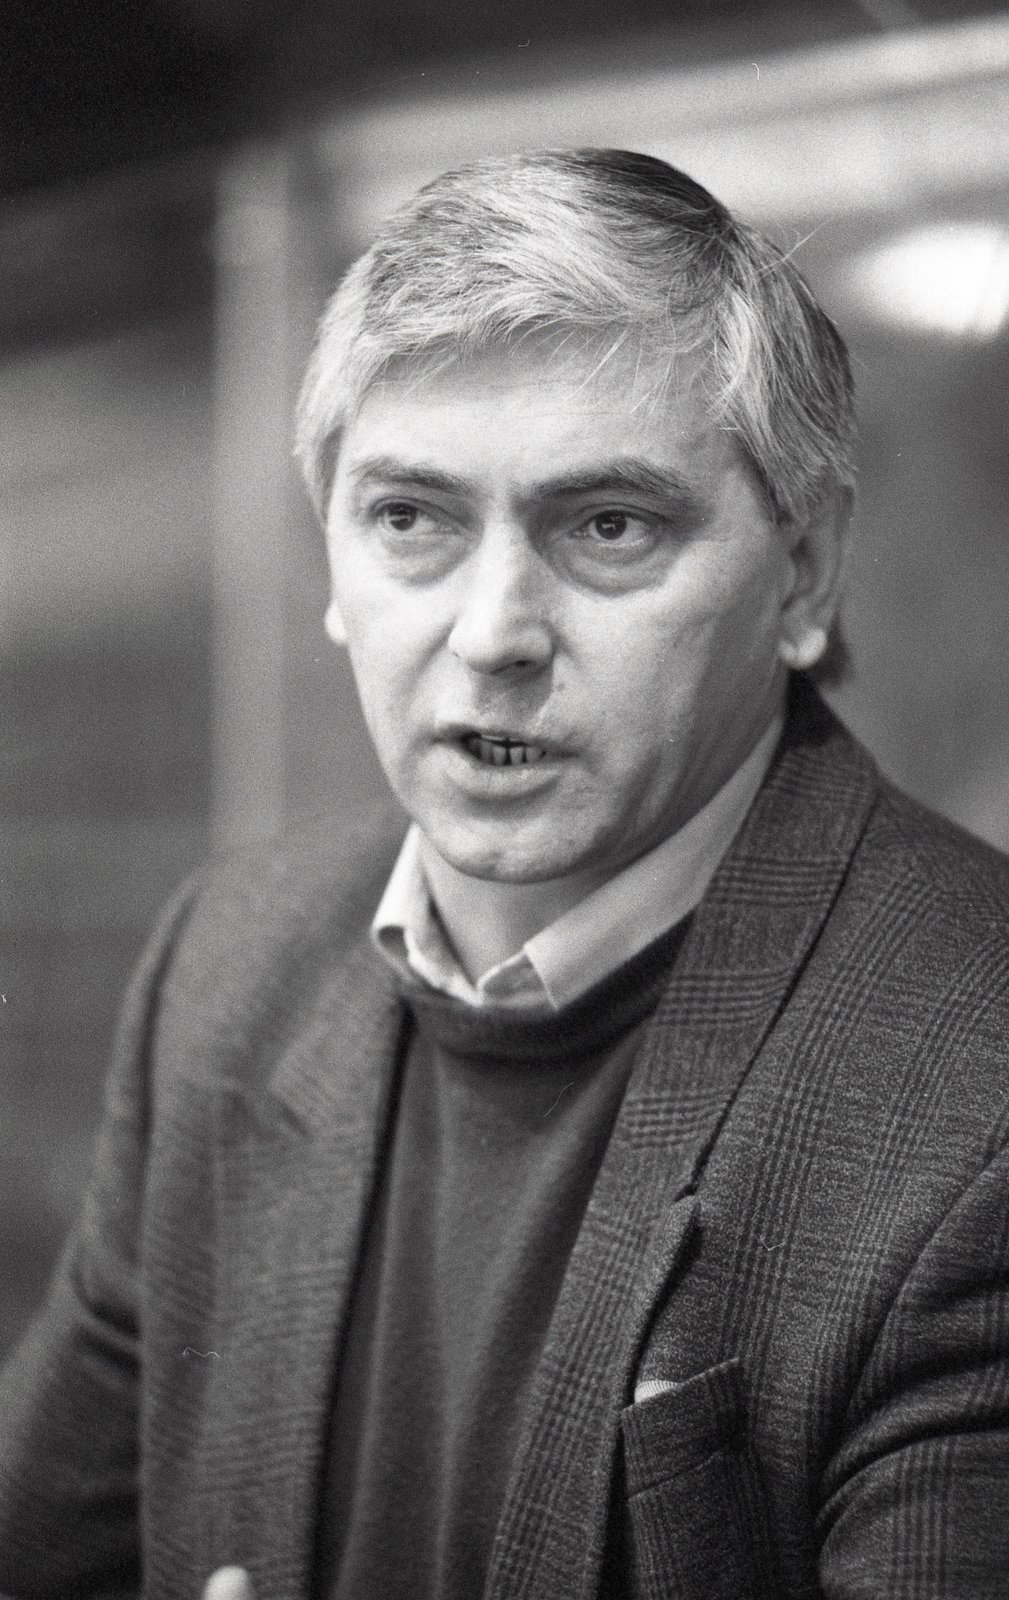 Ivan Hlinka zemřel v roce 2004 při autonehodě u Karlových Varů